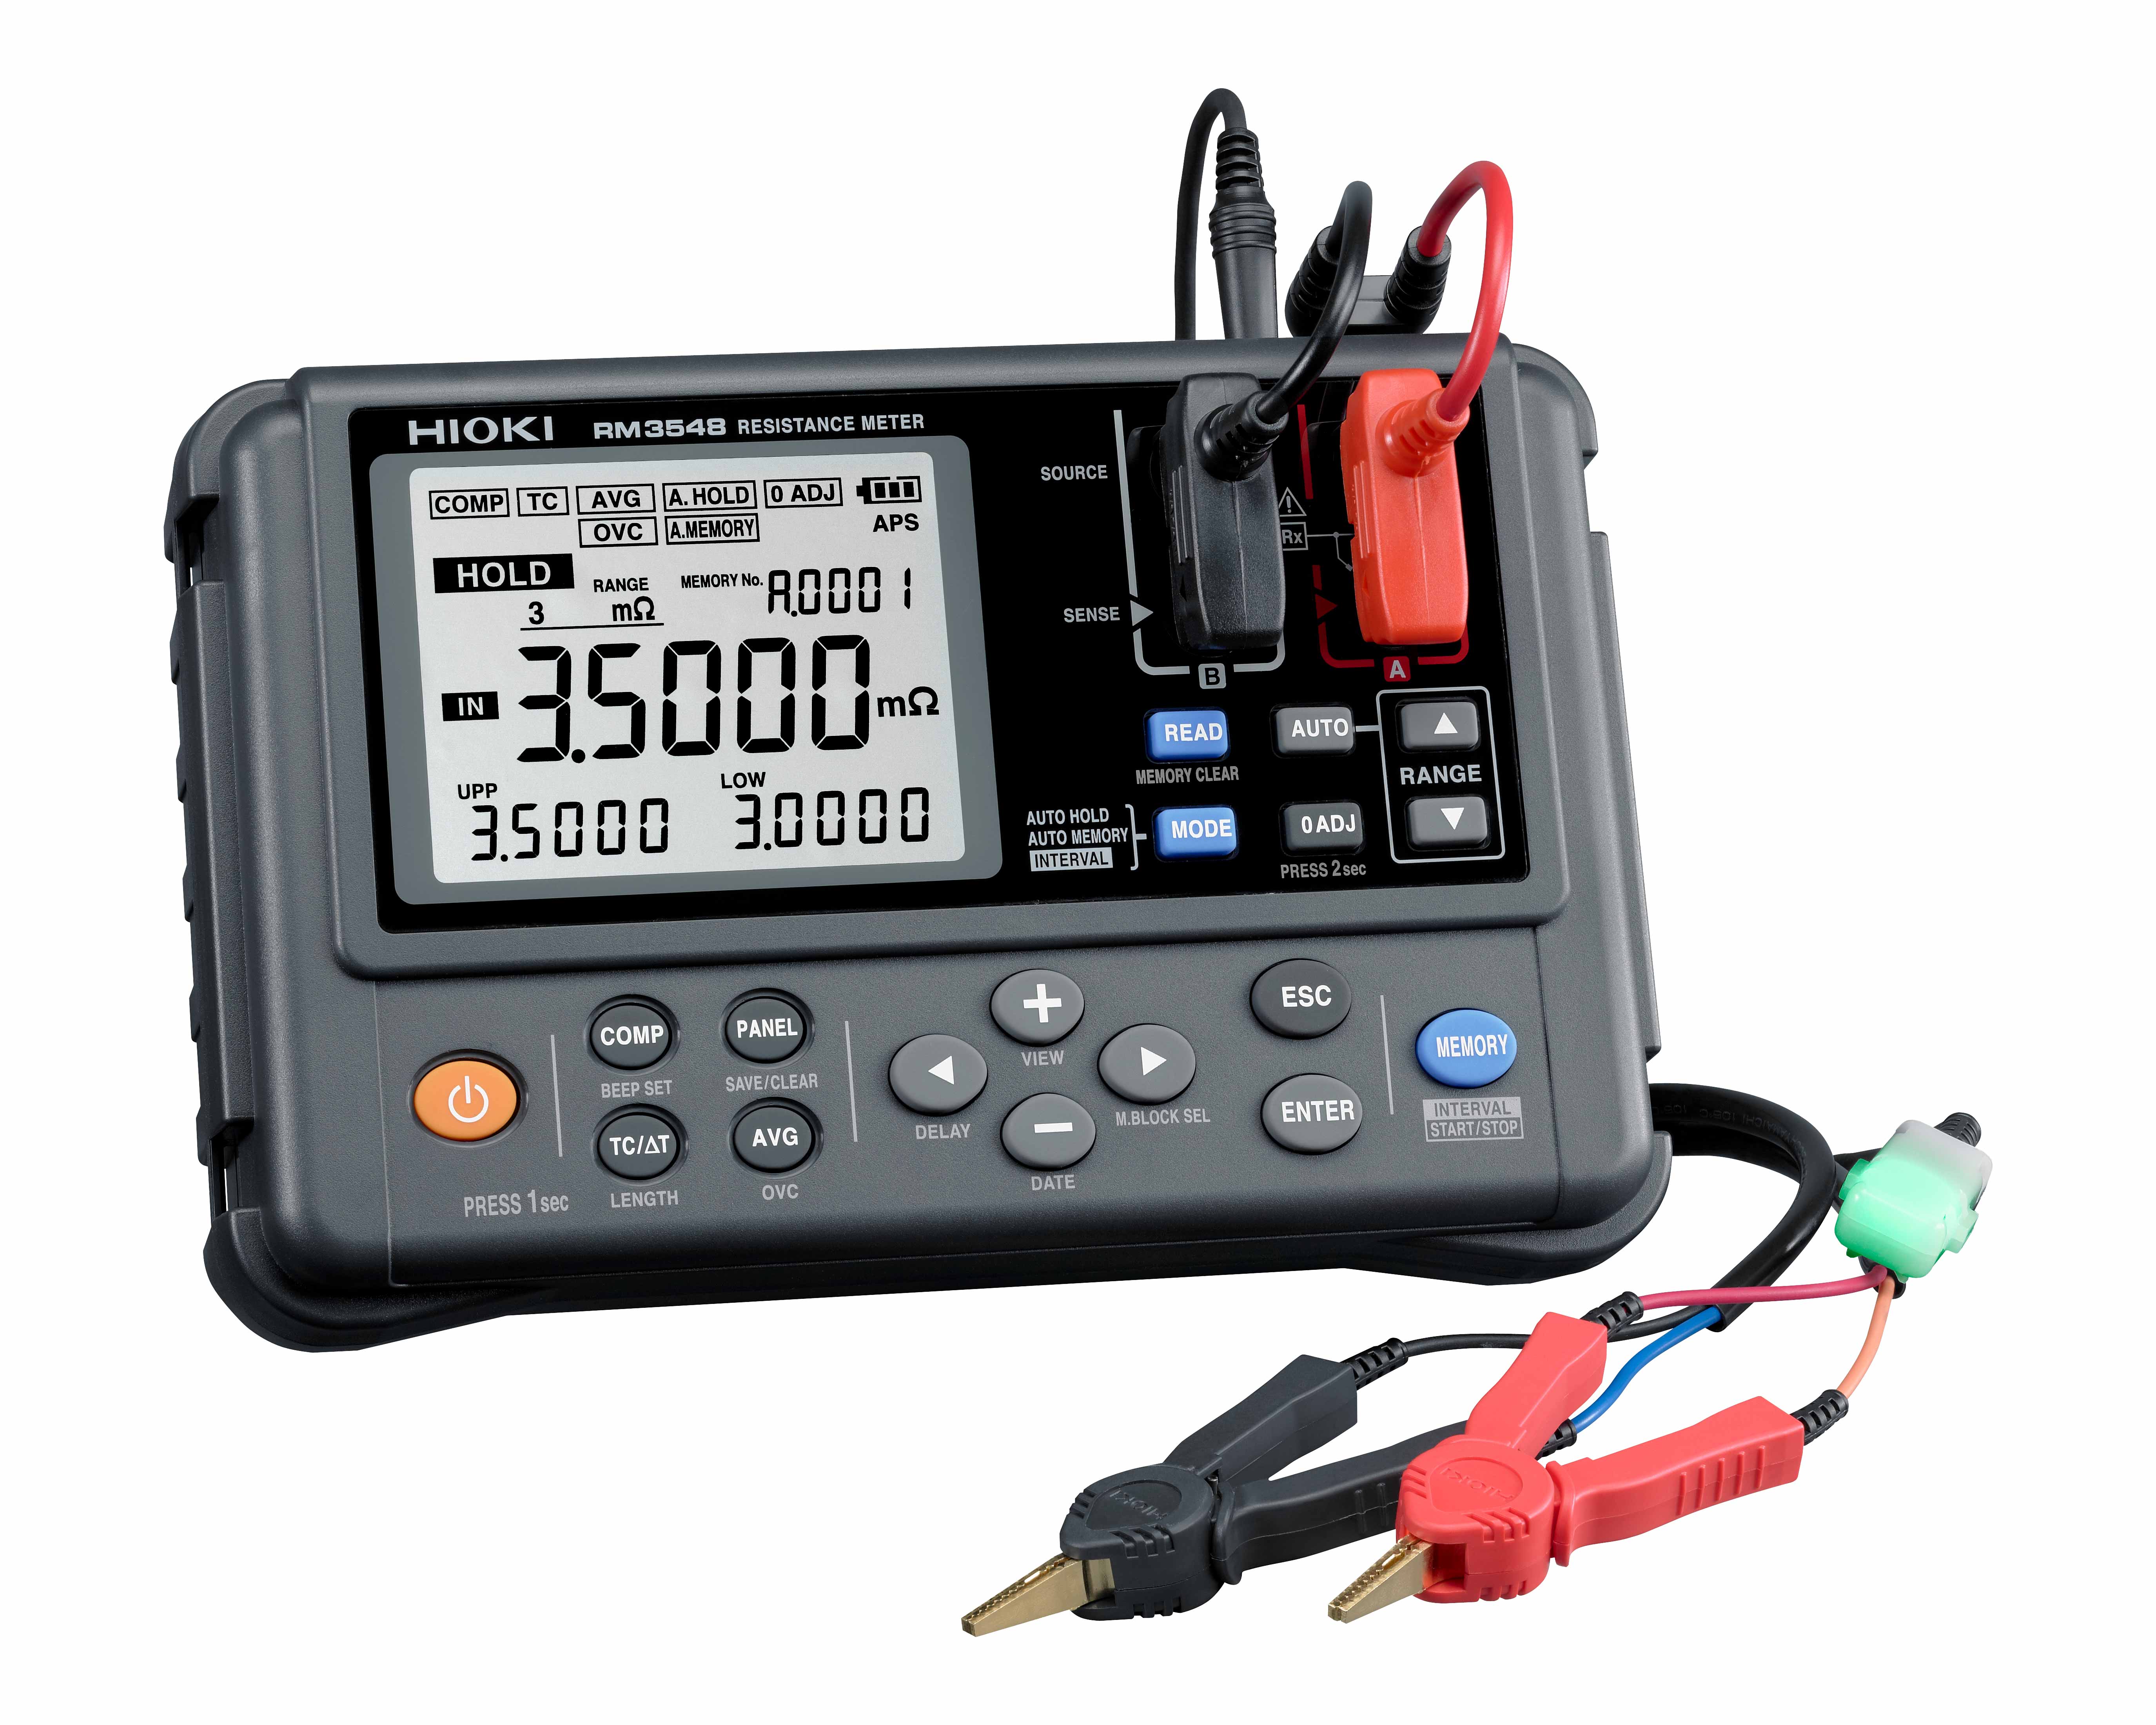 Resistance Meters RM3548